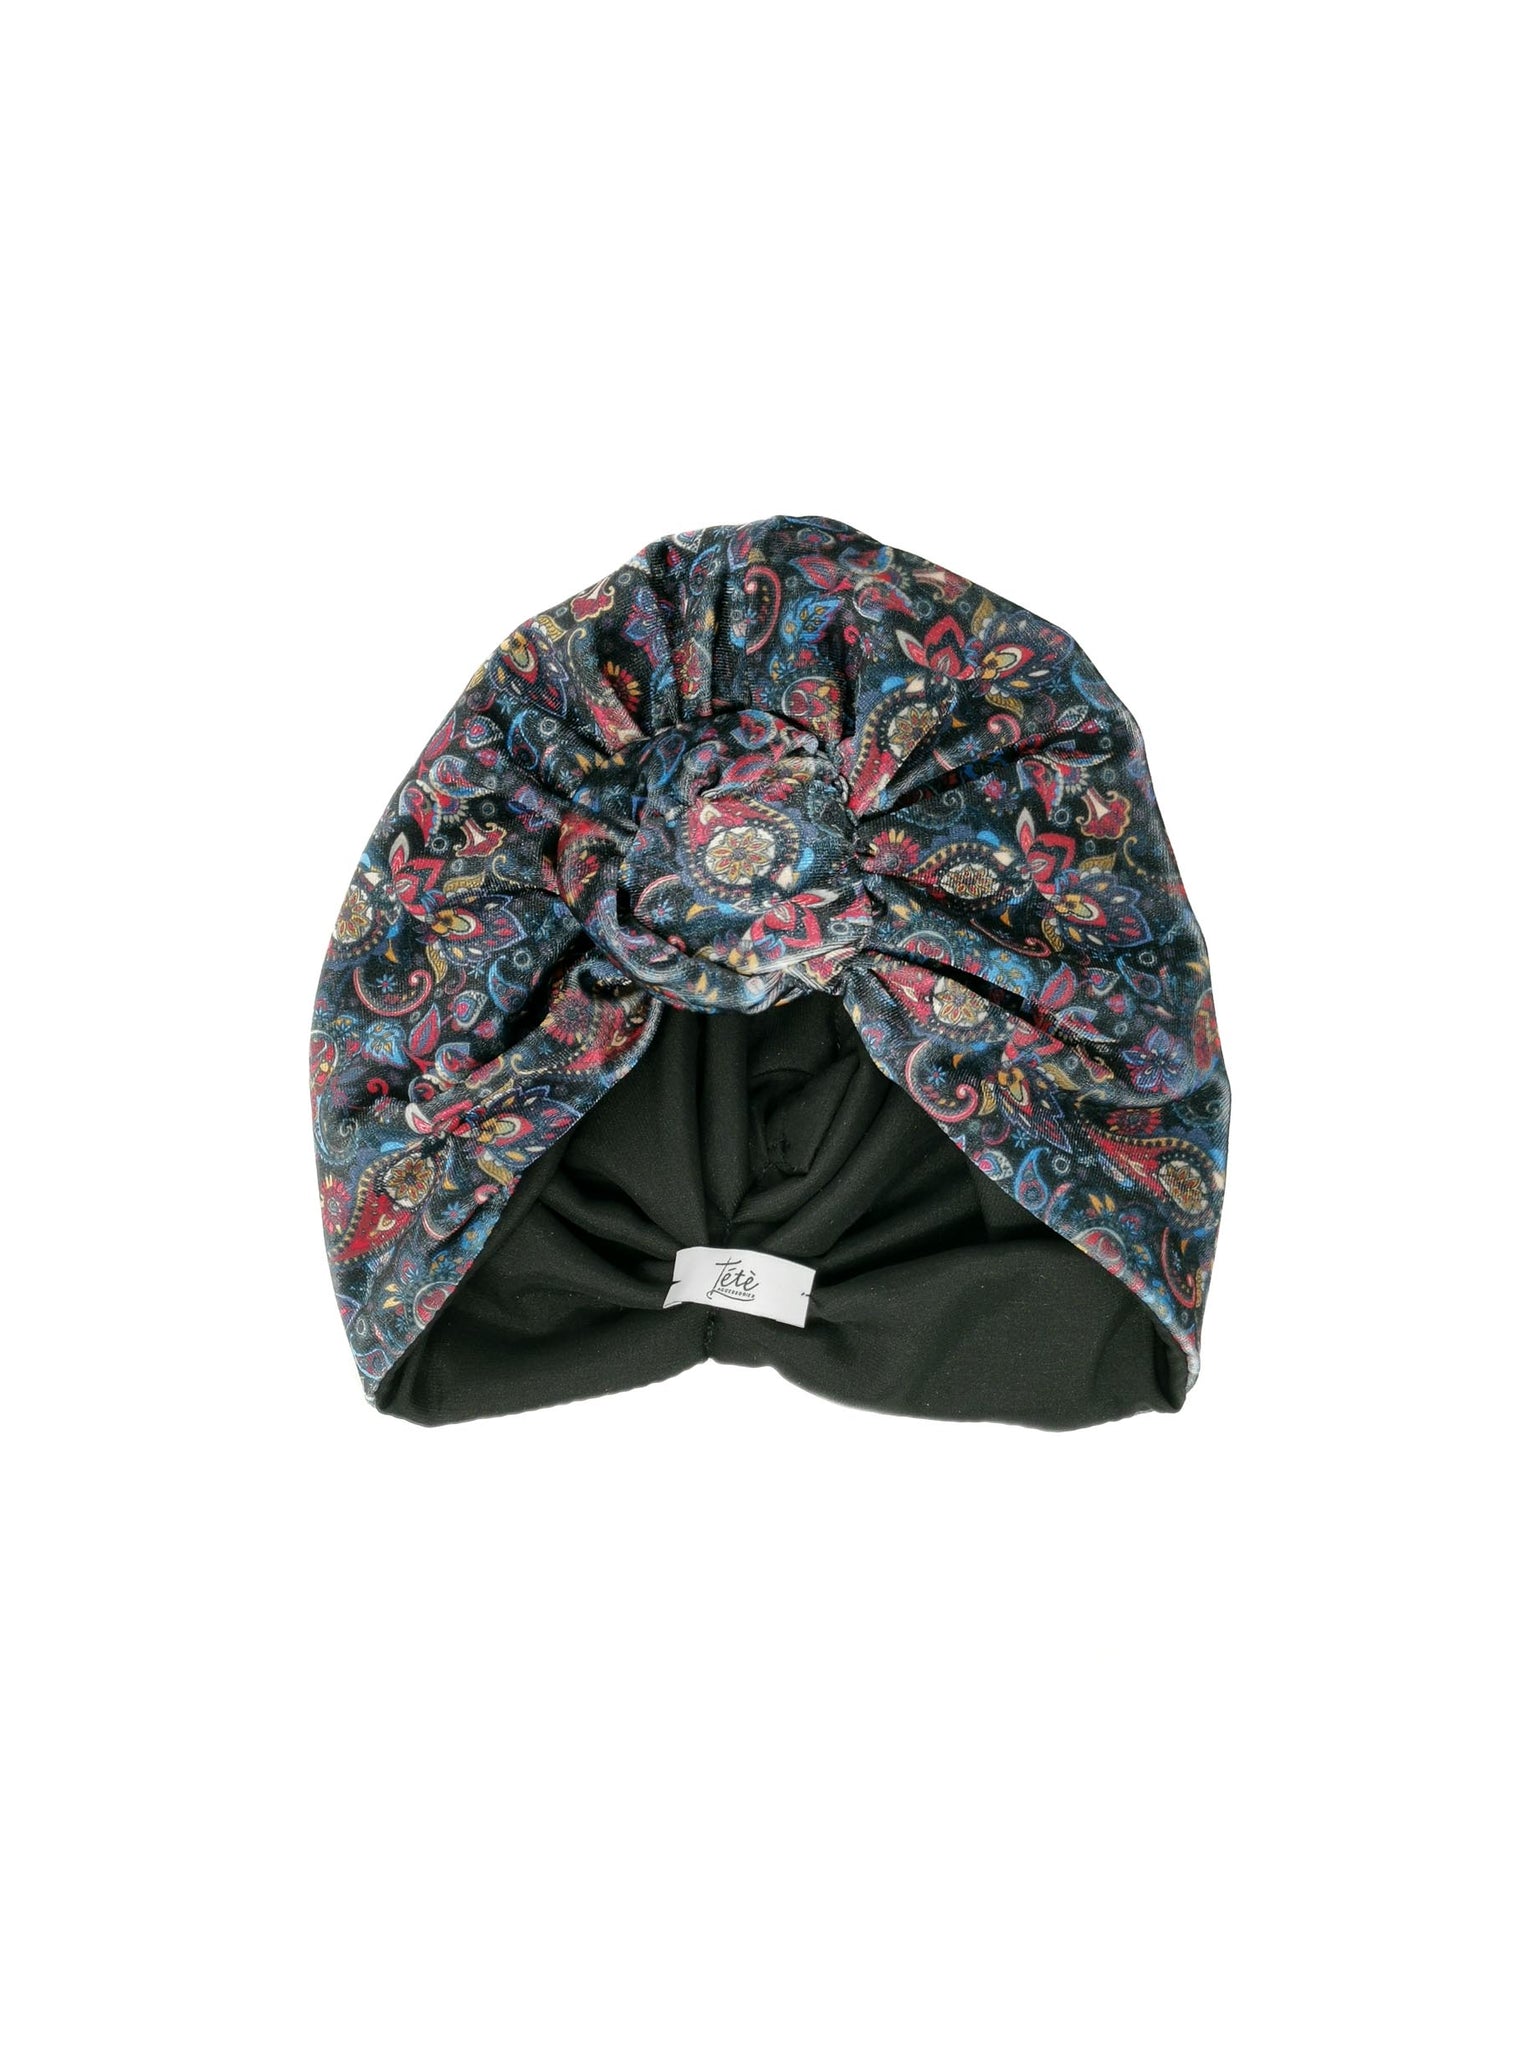 Black paisley velvet turban